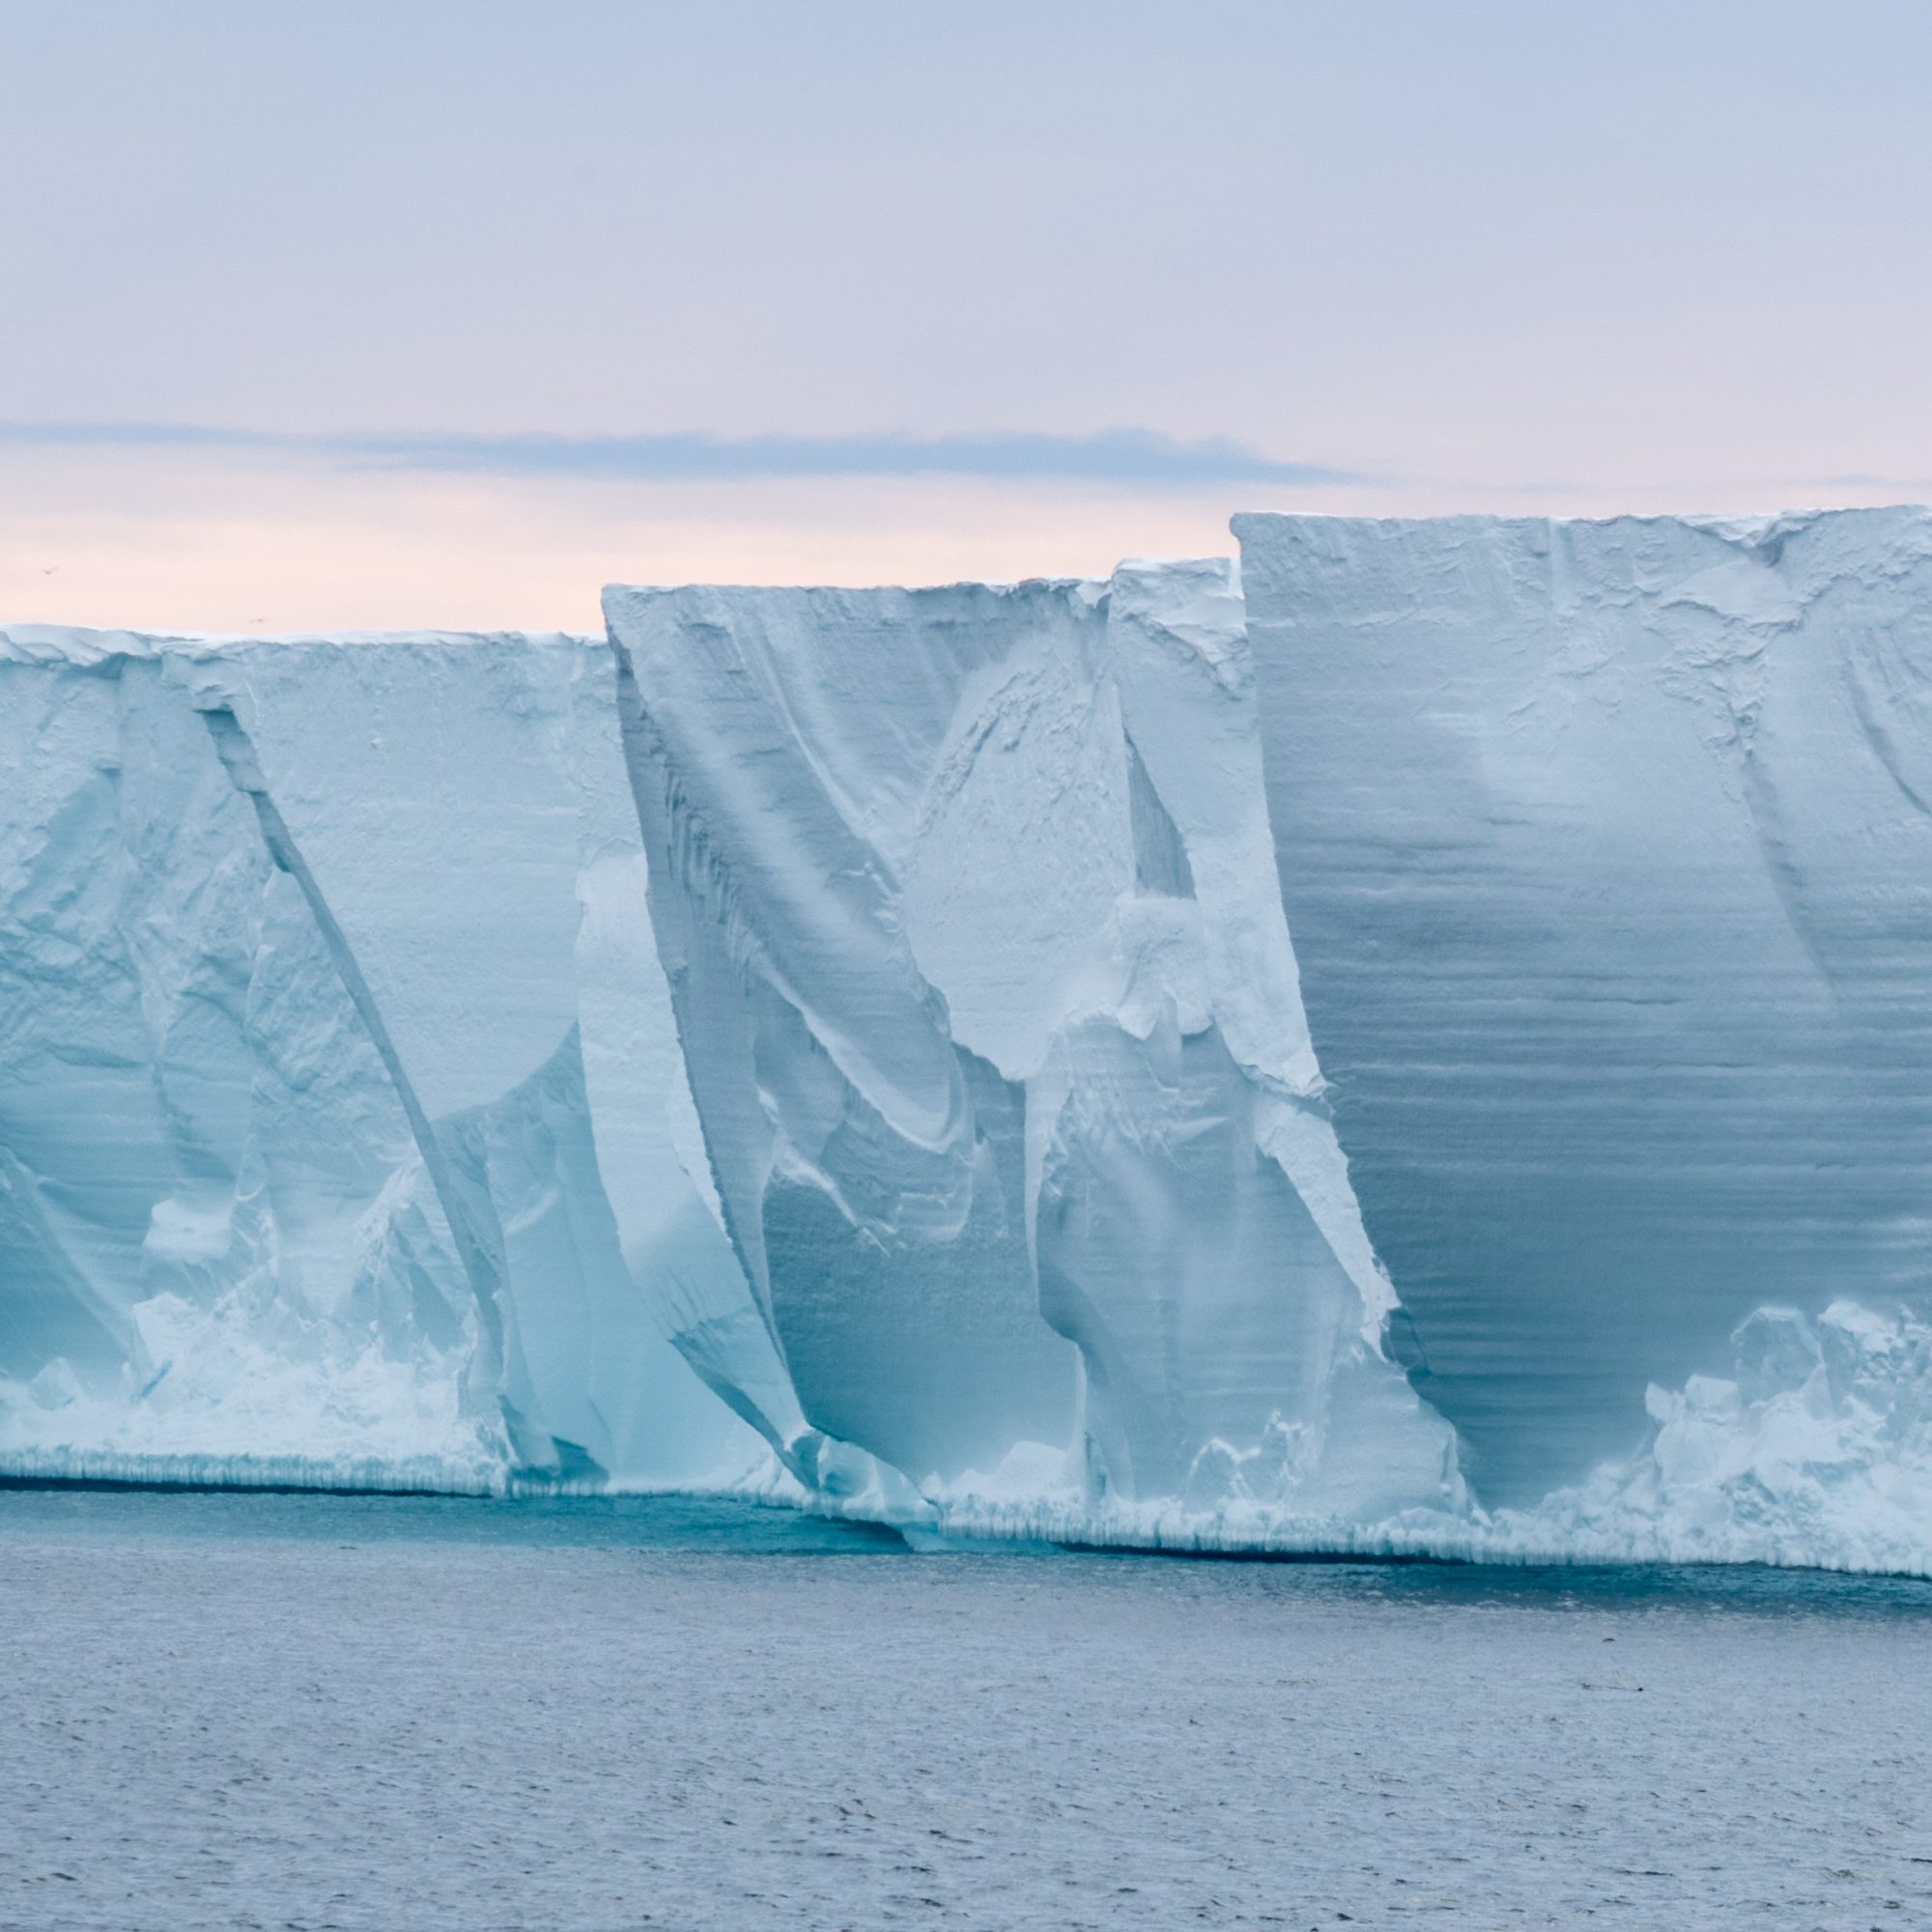 Ross Ice Shelf – Antarctica, 2018